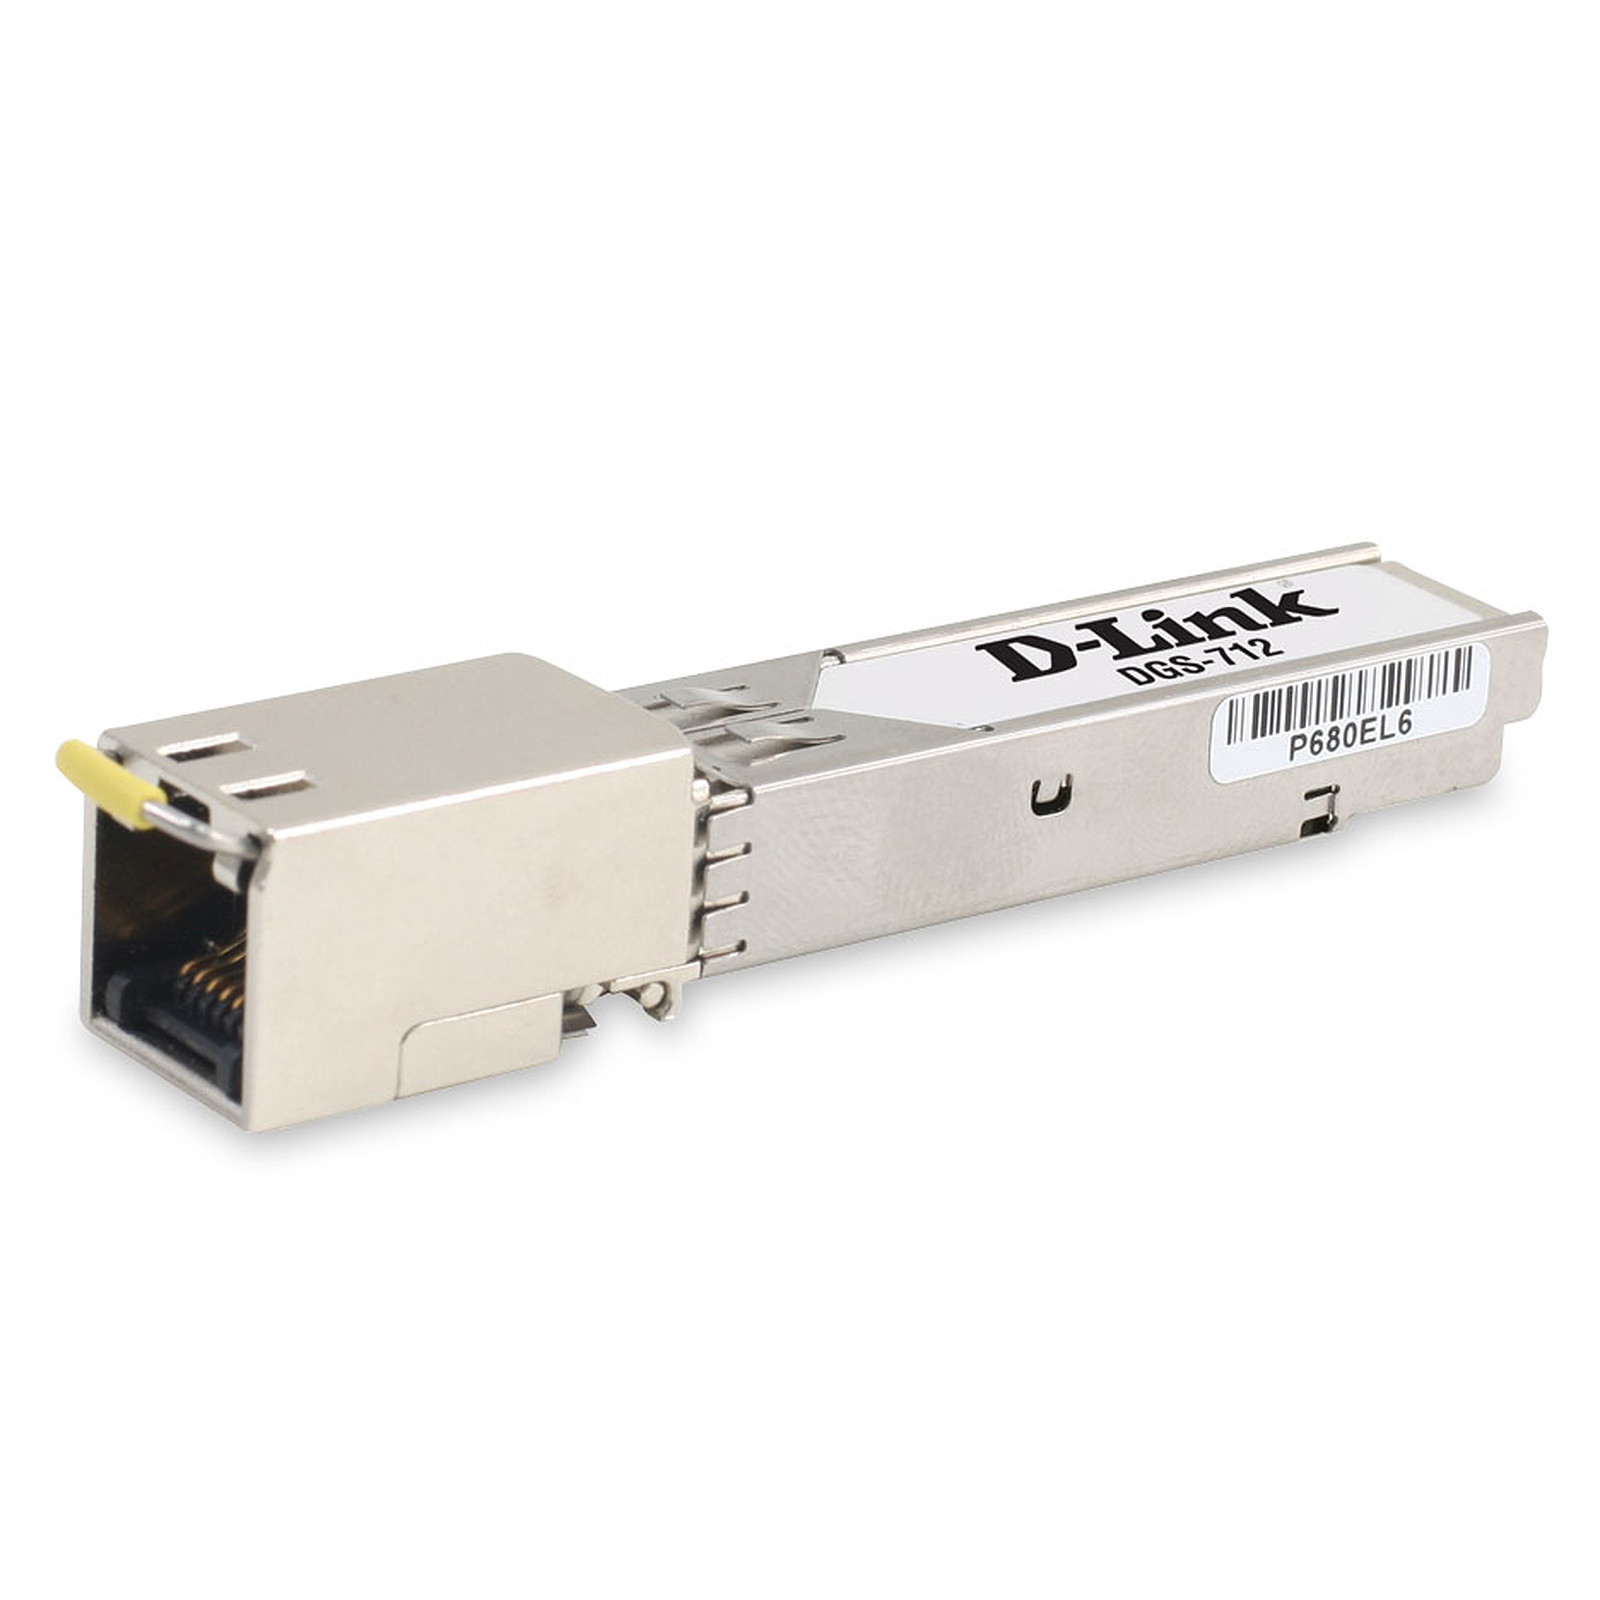 D-Link DGS-712 - Accessoires switch D-Link - Occasion